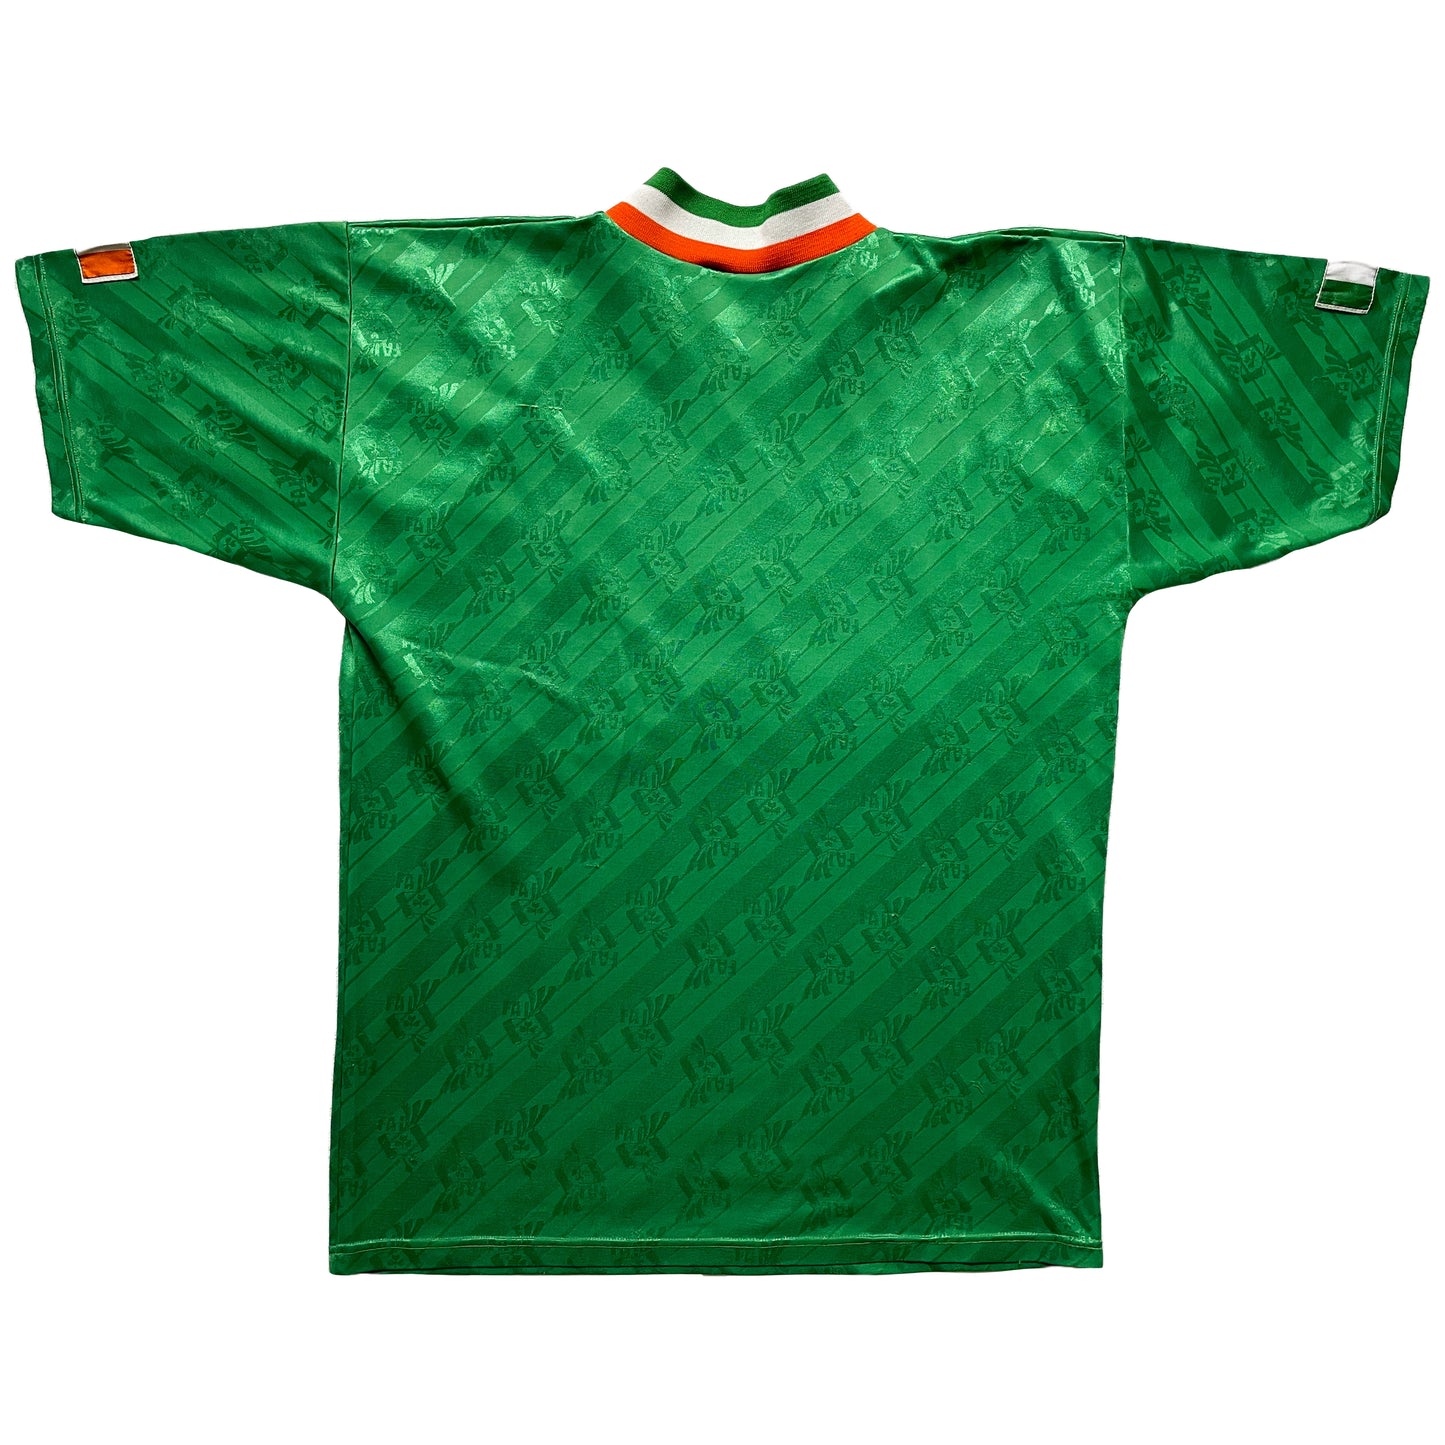 1994 World Cup Ireland home shirt (M)